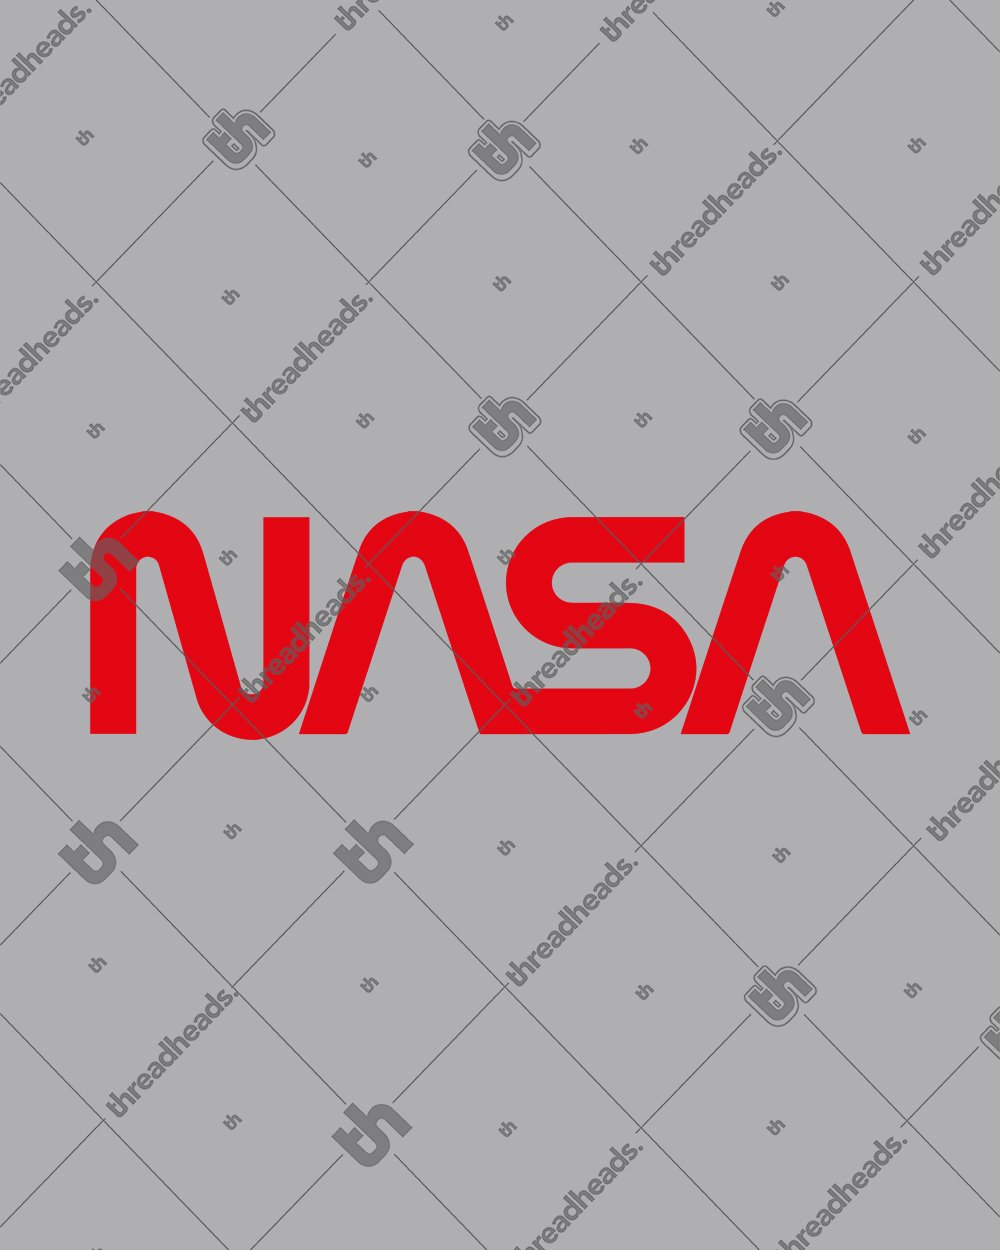 NASA Logotype Hoodie Australia Online #colour_grey